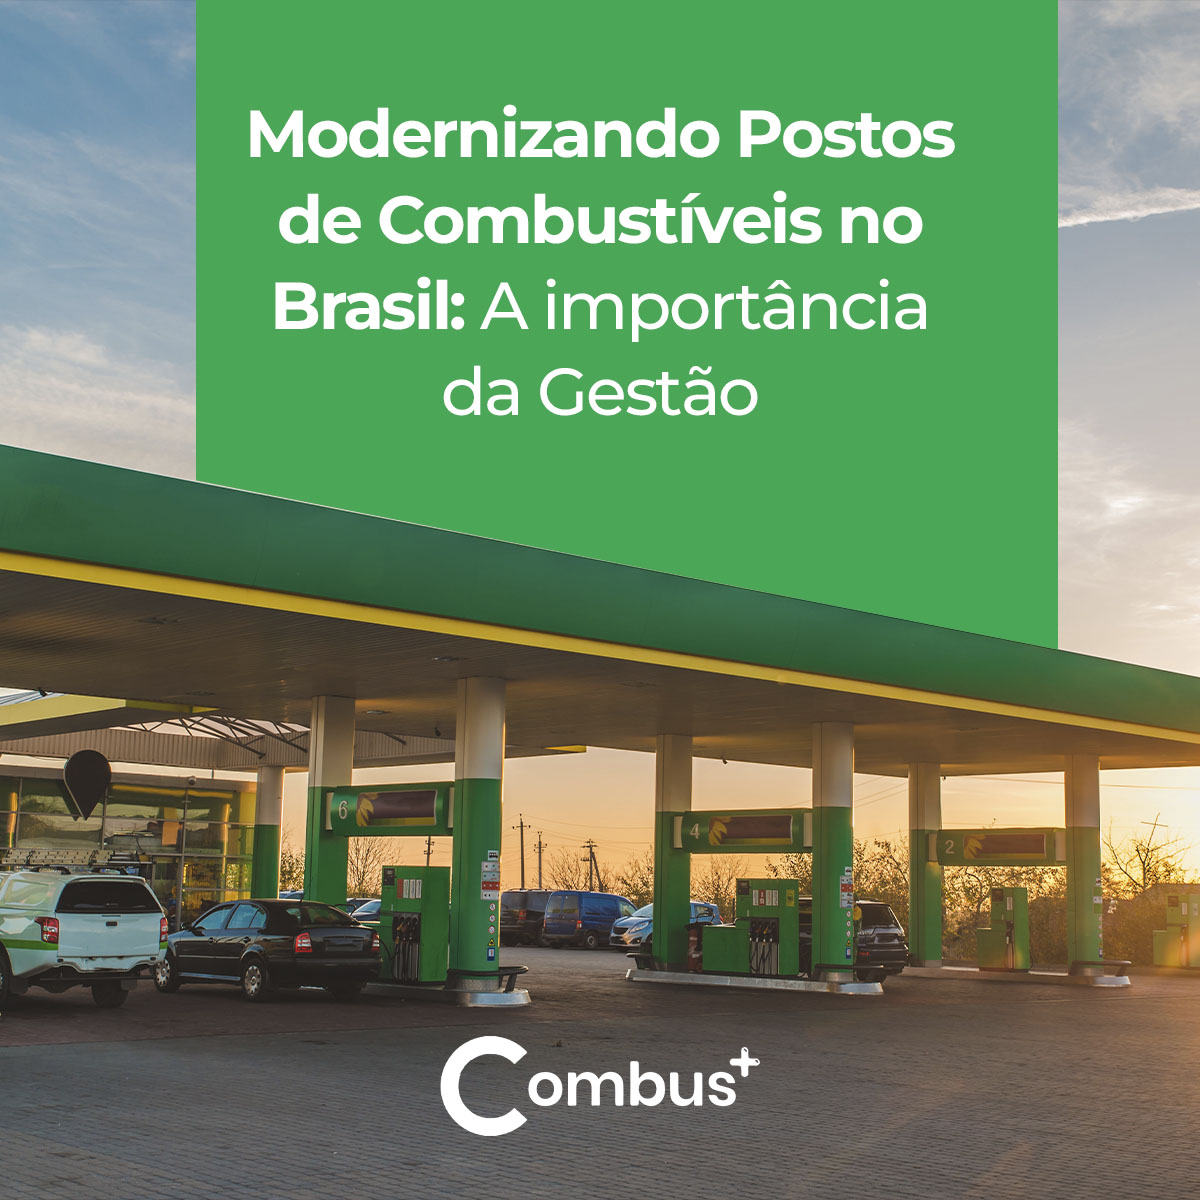 Modernizando Postos de Combustíveis no Brasil: A importância da Gestão